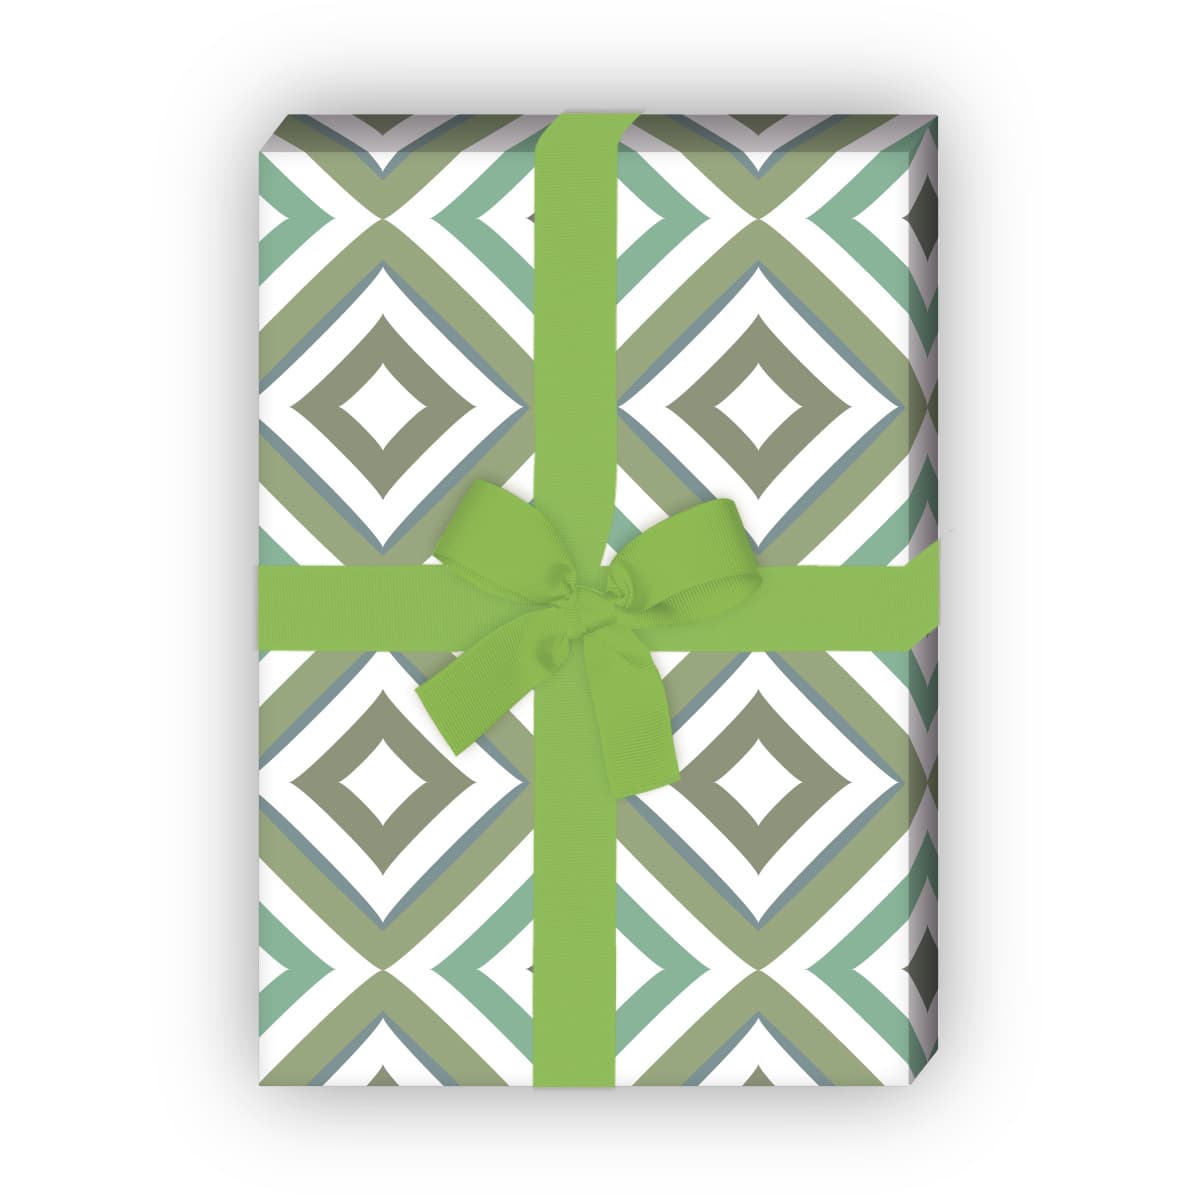 Kartenkaufrausch: Edles grafisches Geschenkpapier mit aus unserer Geburtstags Papeterie in grün